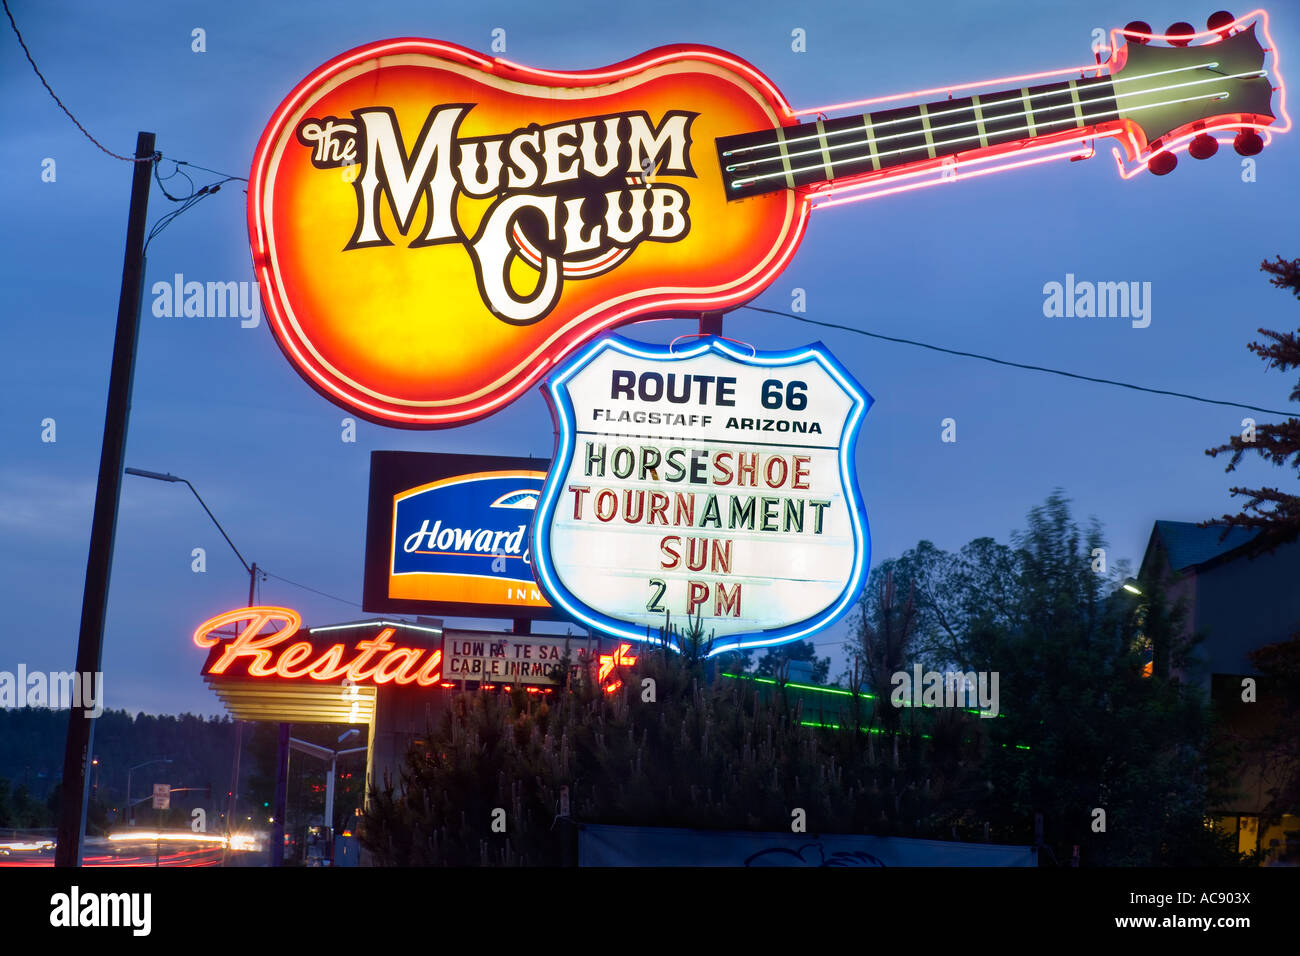 Monument en néon du célèbre Museum Club roadhouse le long de la Route 66 à Flagstaff, Arizona USA au crépuscule. Banque D'Images